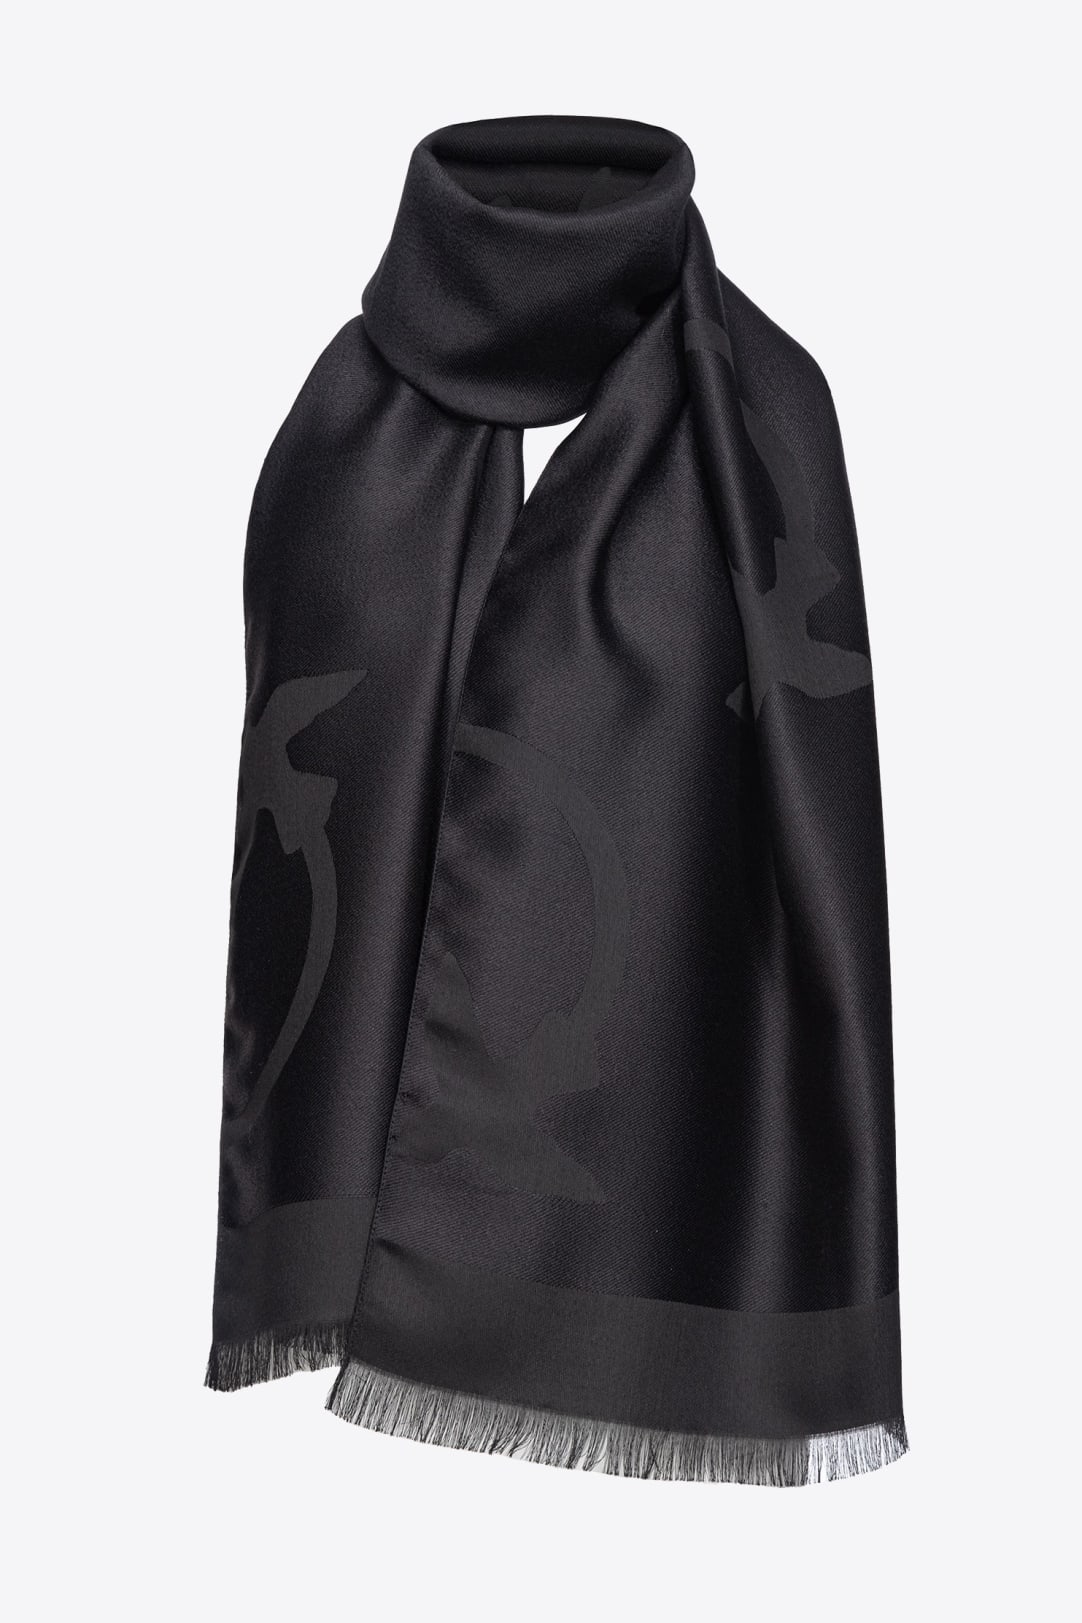 Louis Vuitton Giant Monogram Scarf Cashmere/Wool Black/White